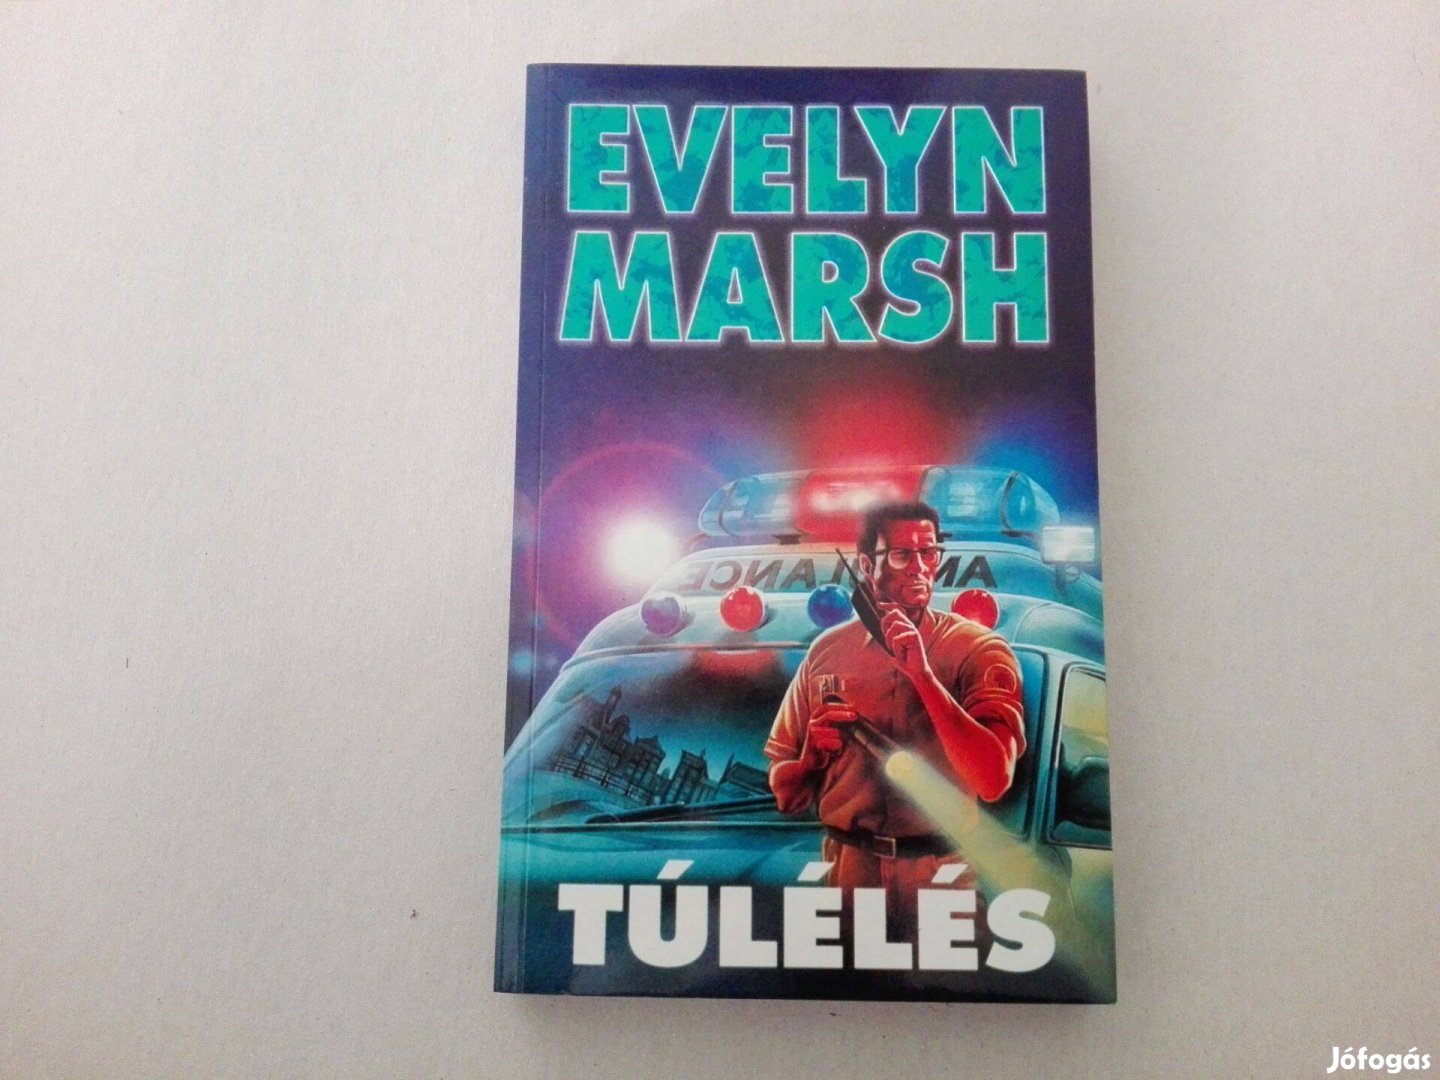 Evelyn Marsh: Túlélés c.könyv jó állapotban eladó!